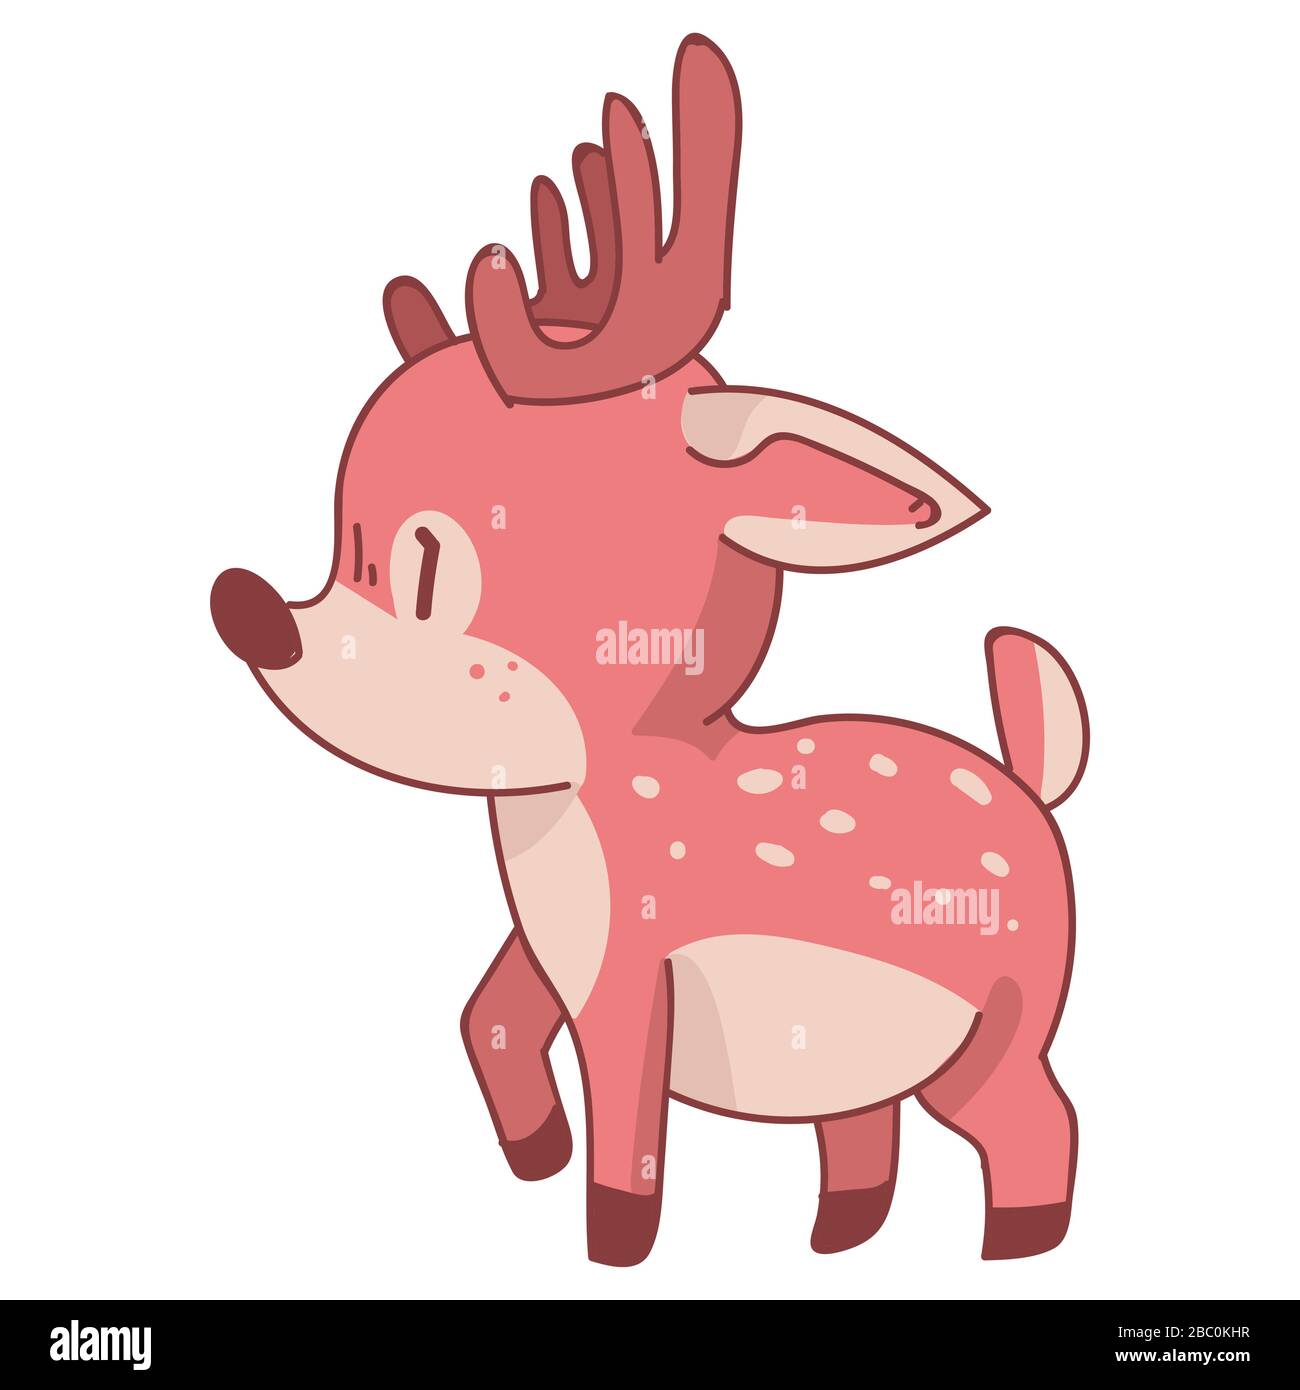 Dibujo de animales de ciervo de dibujos animados de kawaii rosa. Rosa girly  doe con corona de flores. Estilo de fideos dibujados a mano infantil. Para  la decoración del bebé del cuarto